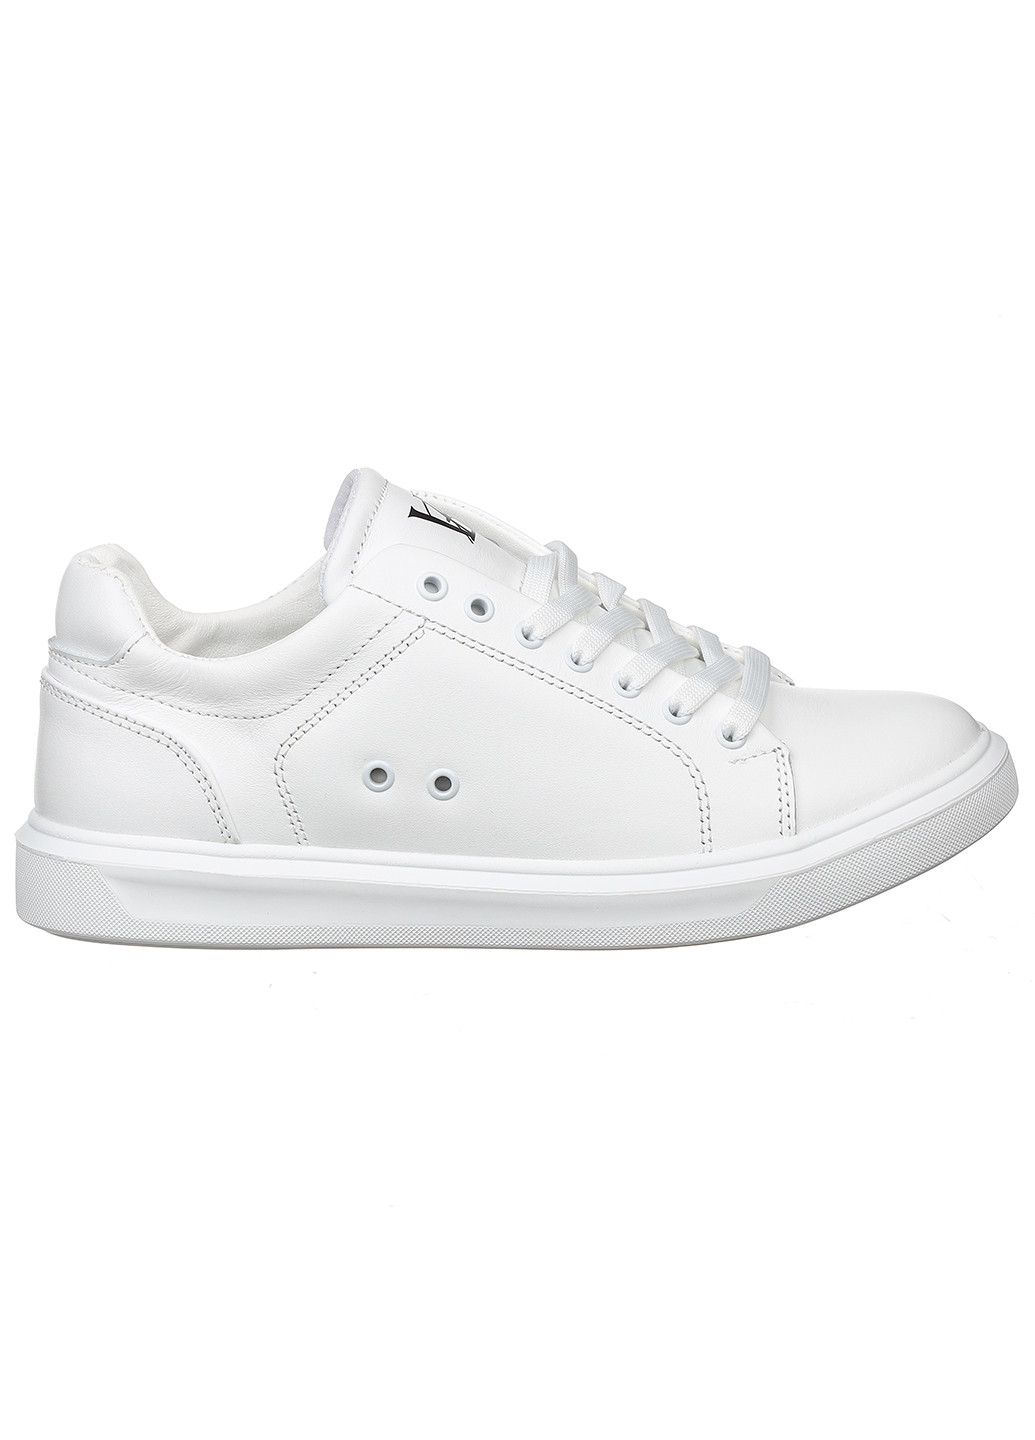 Белые демисезонные женские кроссовки 10126-06 Best Vak